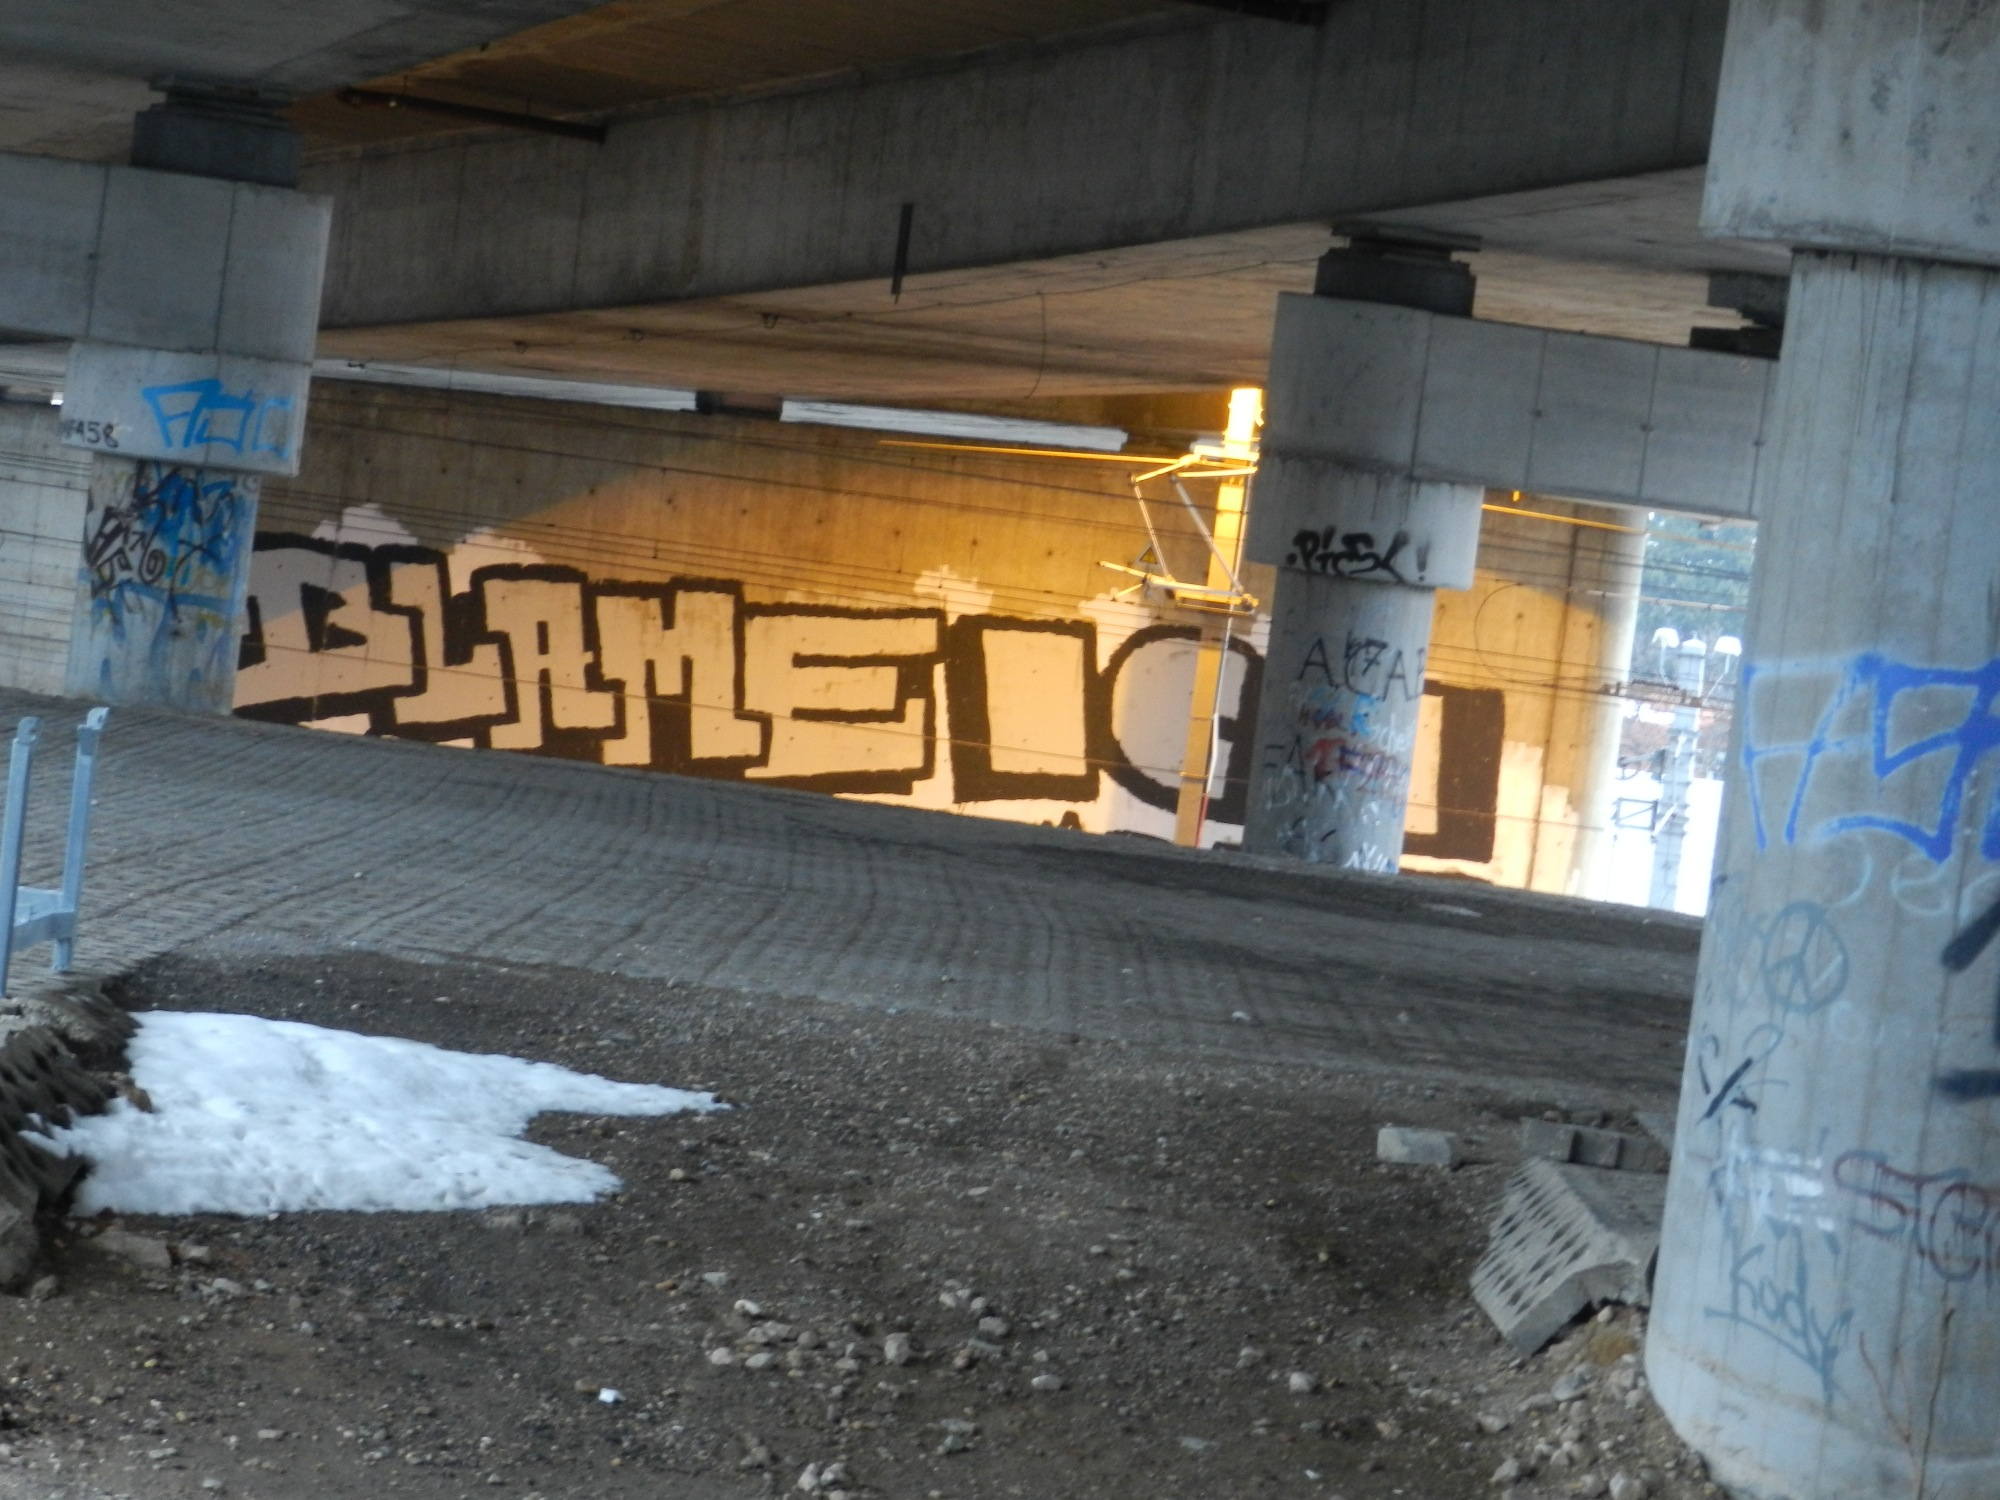 Graffiti unter der Autobahn neben der Bahn